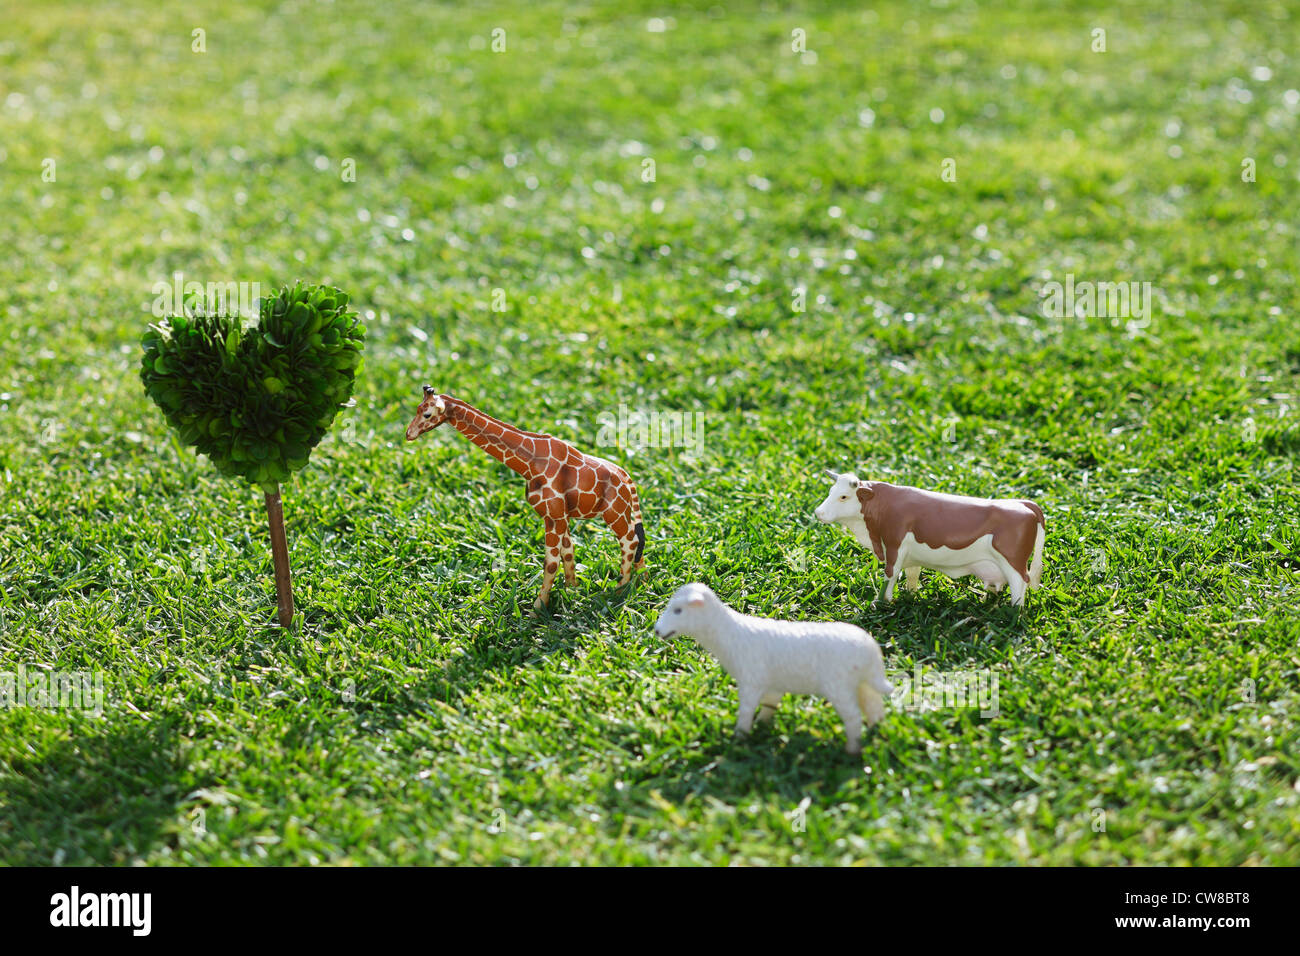 Animals, Heart Shape Tree On Grassy Field Stock Photo